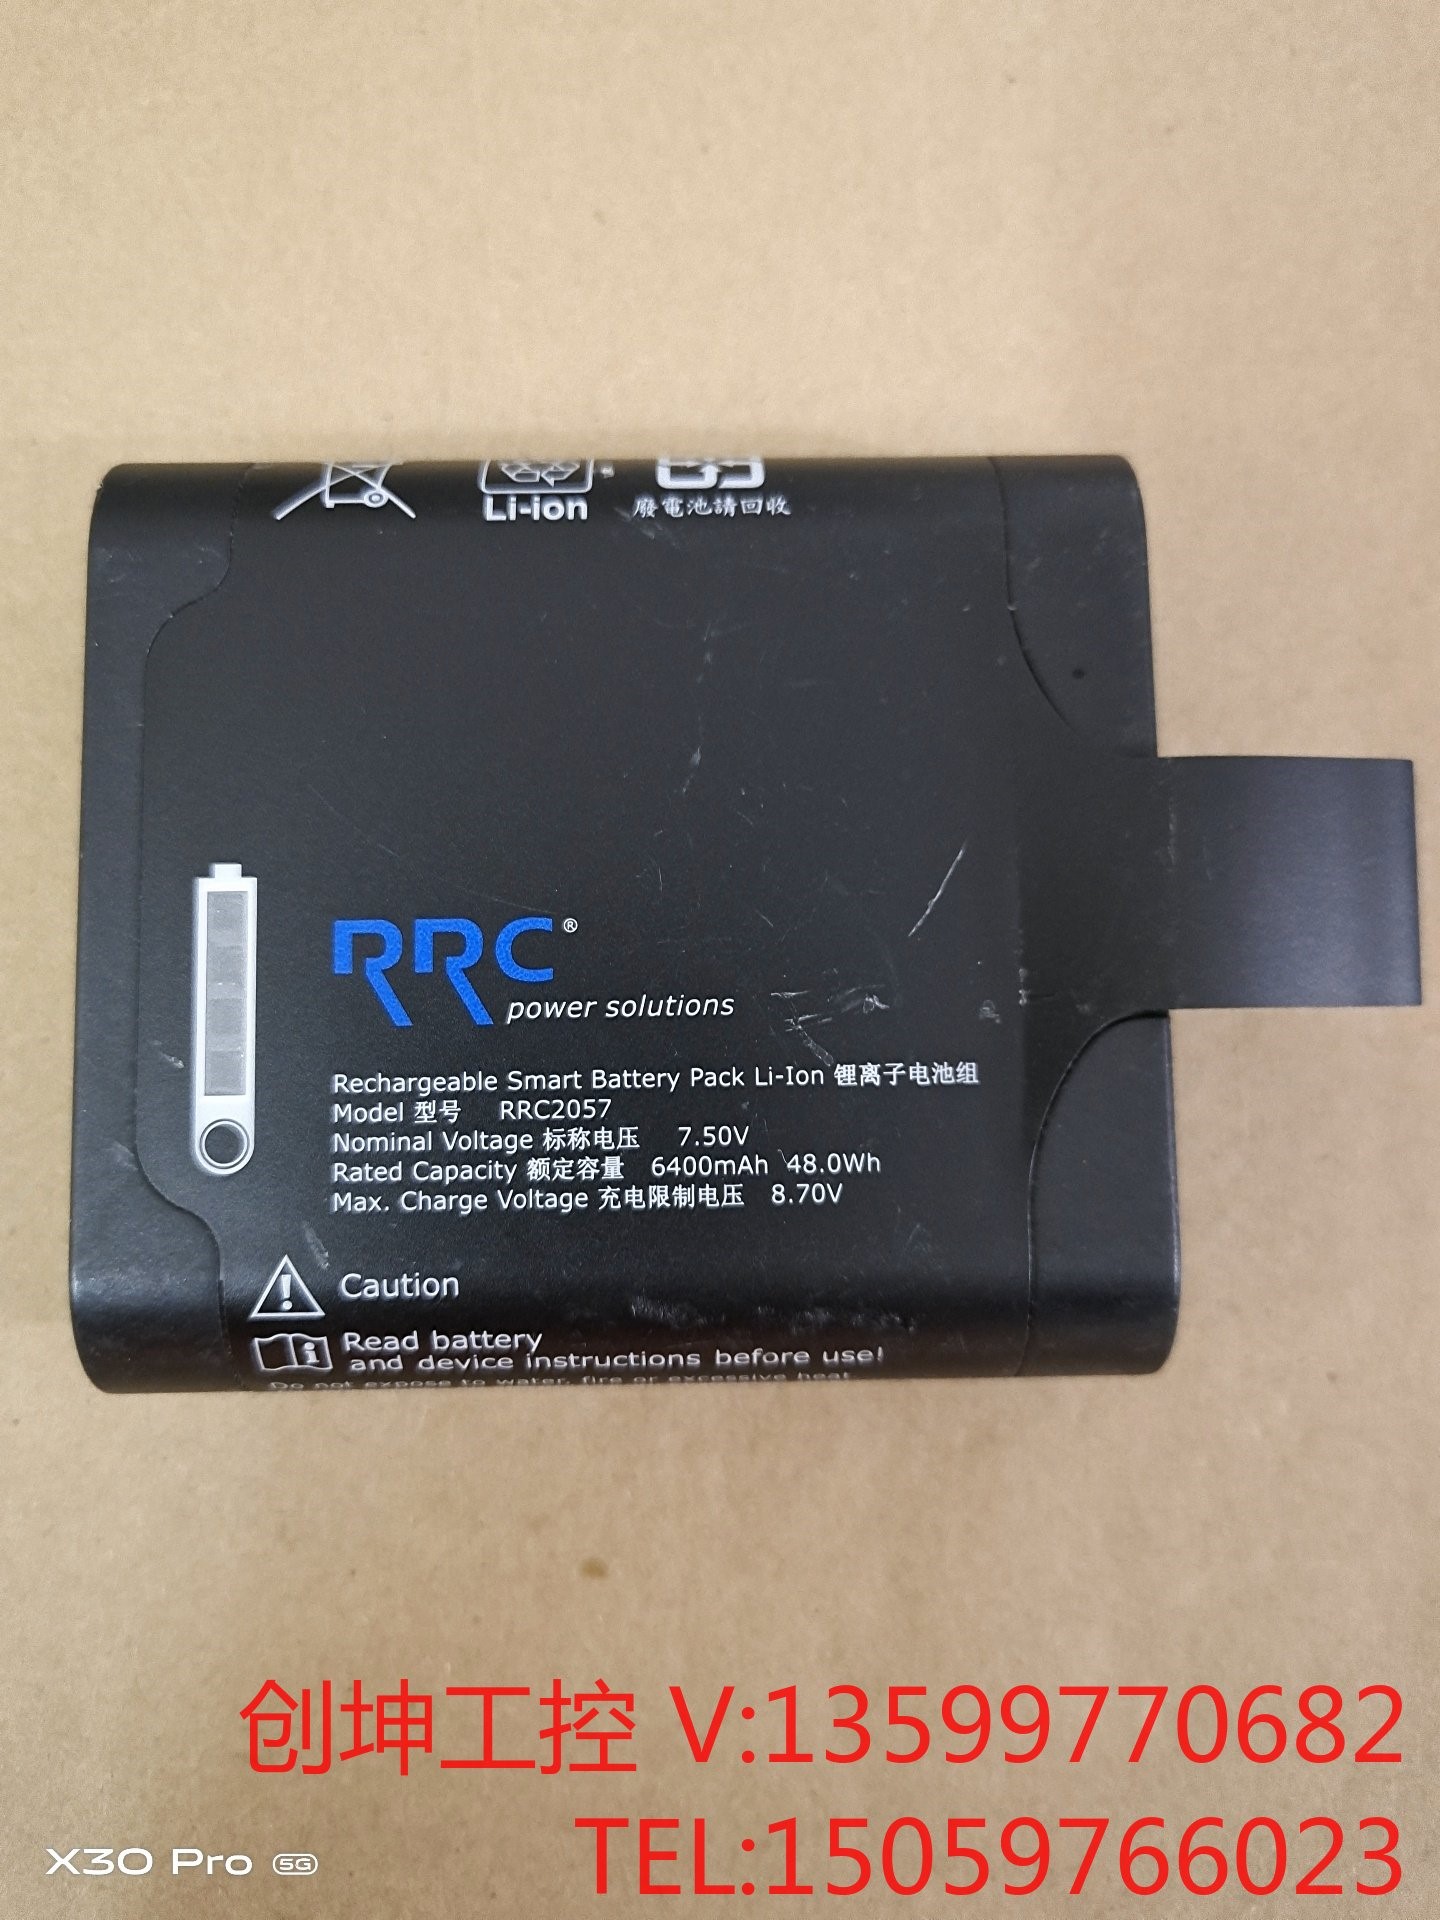 RRC2057仪器电池议价产品 电子元器件市场 其它元器件 原图主图